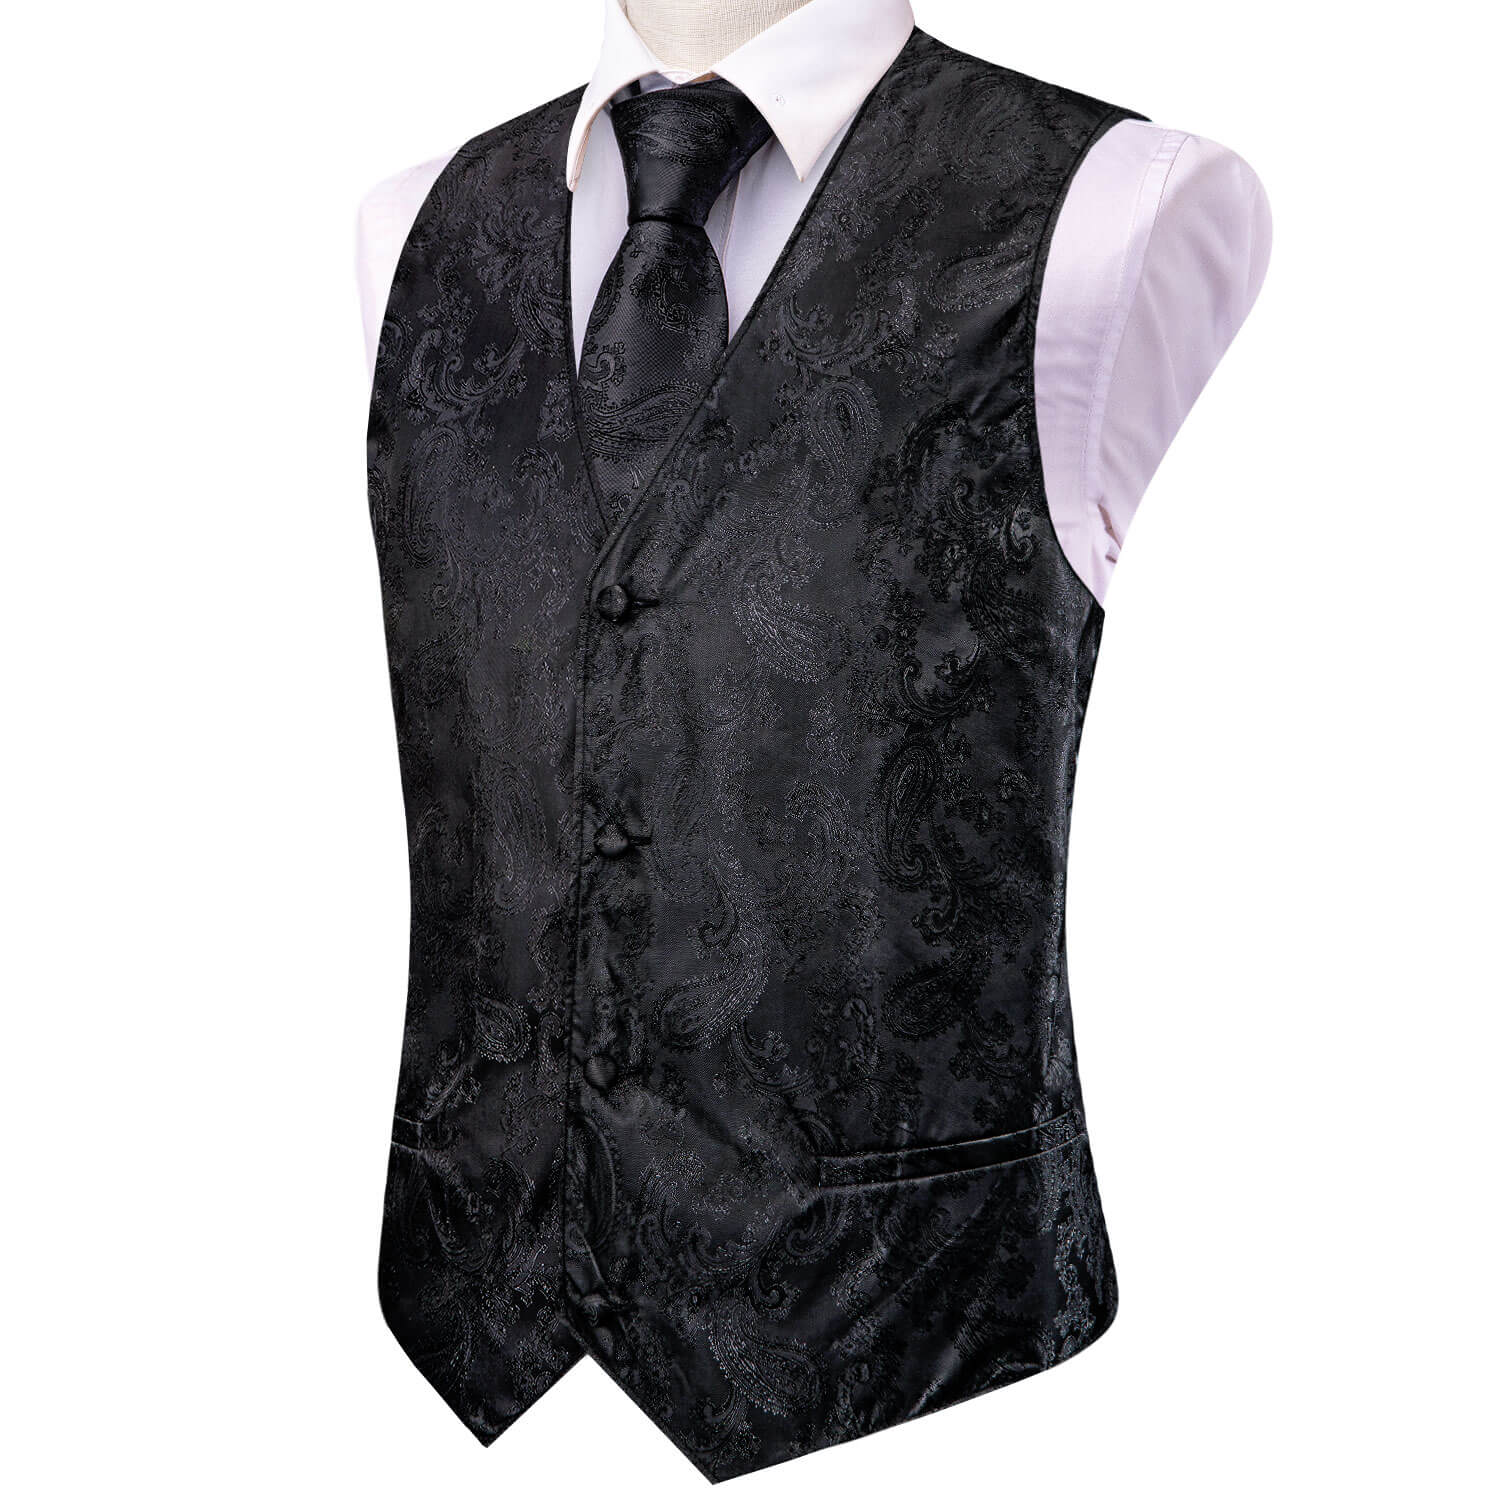  Black Jacquard Paisley Mens Vest and Tie Set